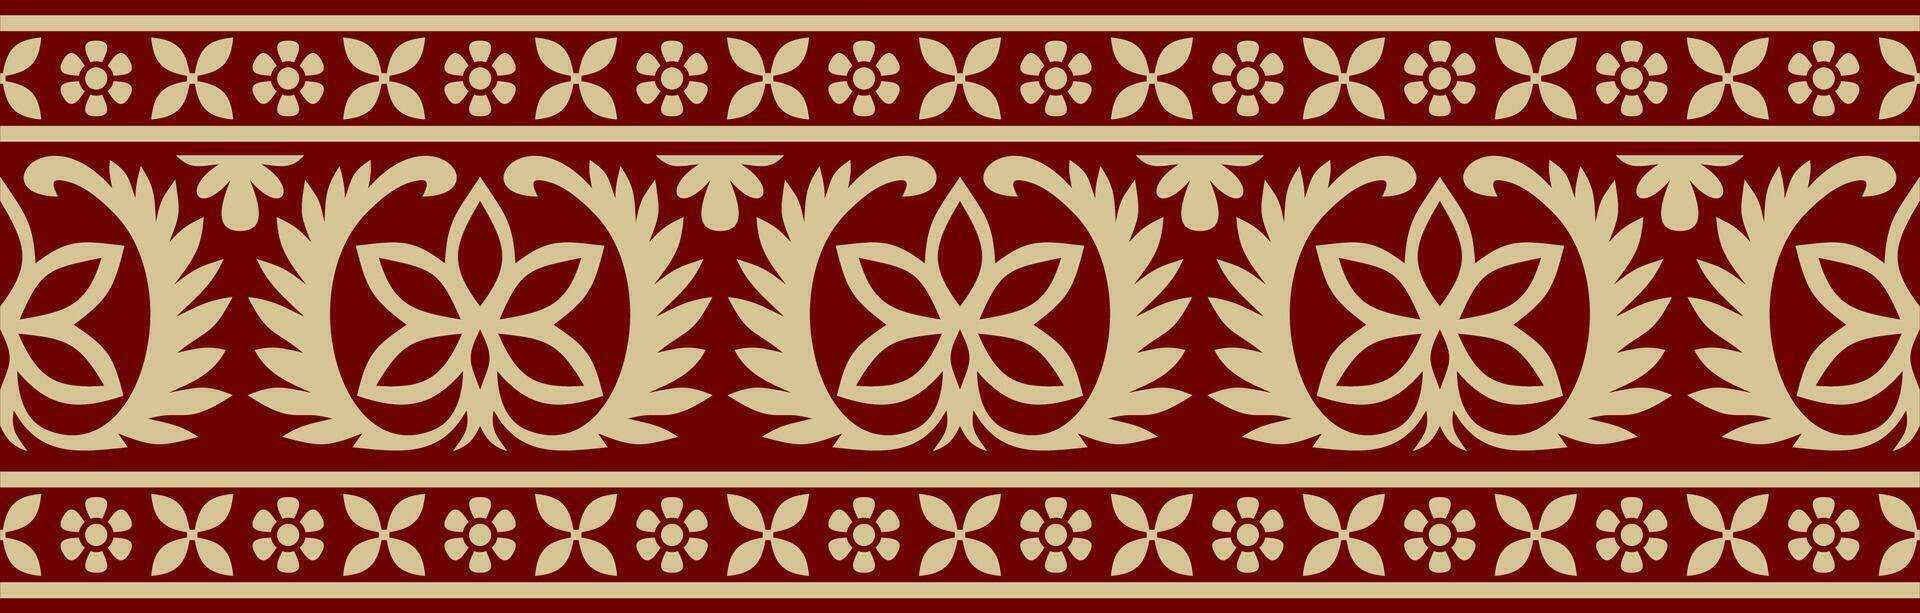 vetor desatado ouro e vermelho indiano nacional ornamento. étnico sem fim plantar fronteira. flores quadro. papoilas e folhas